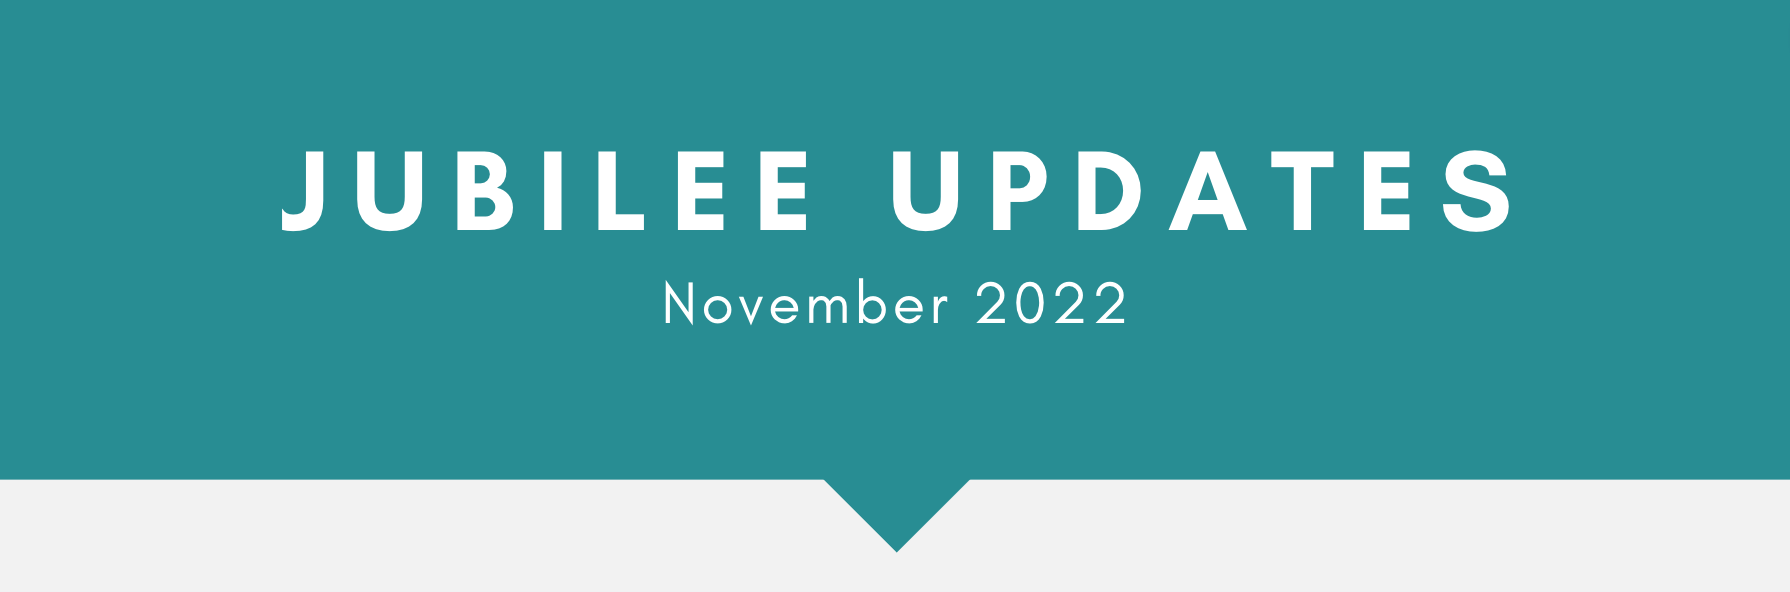 Jubilee_Updates_Nov22